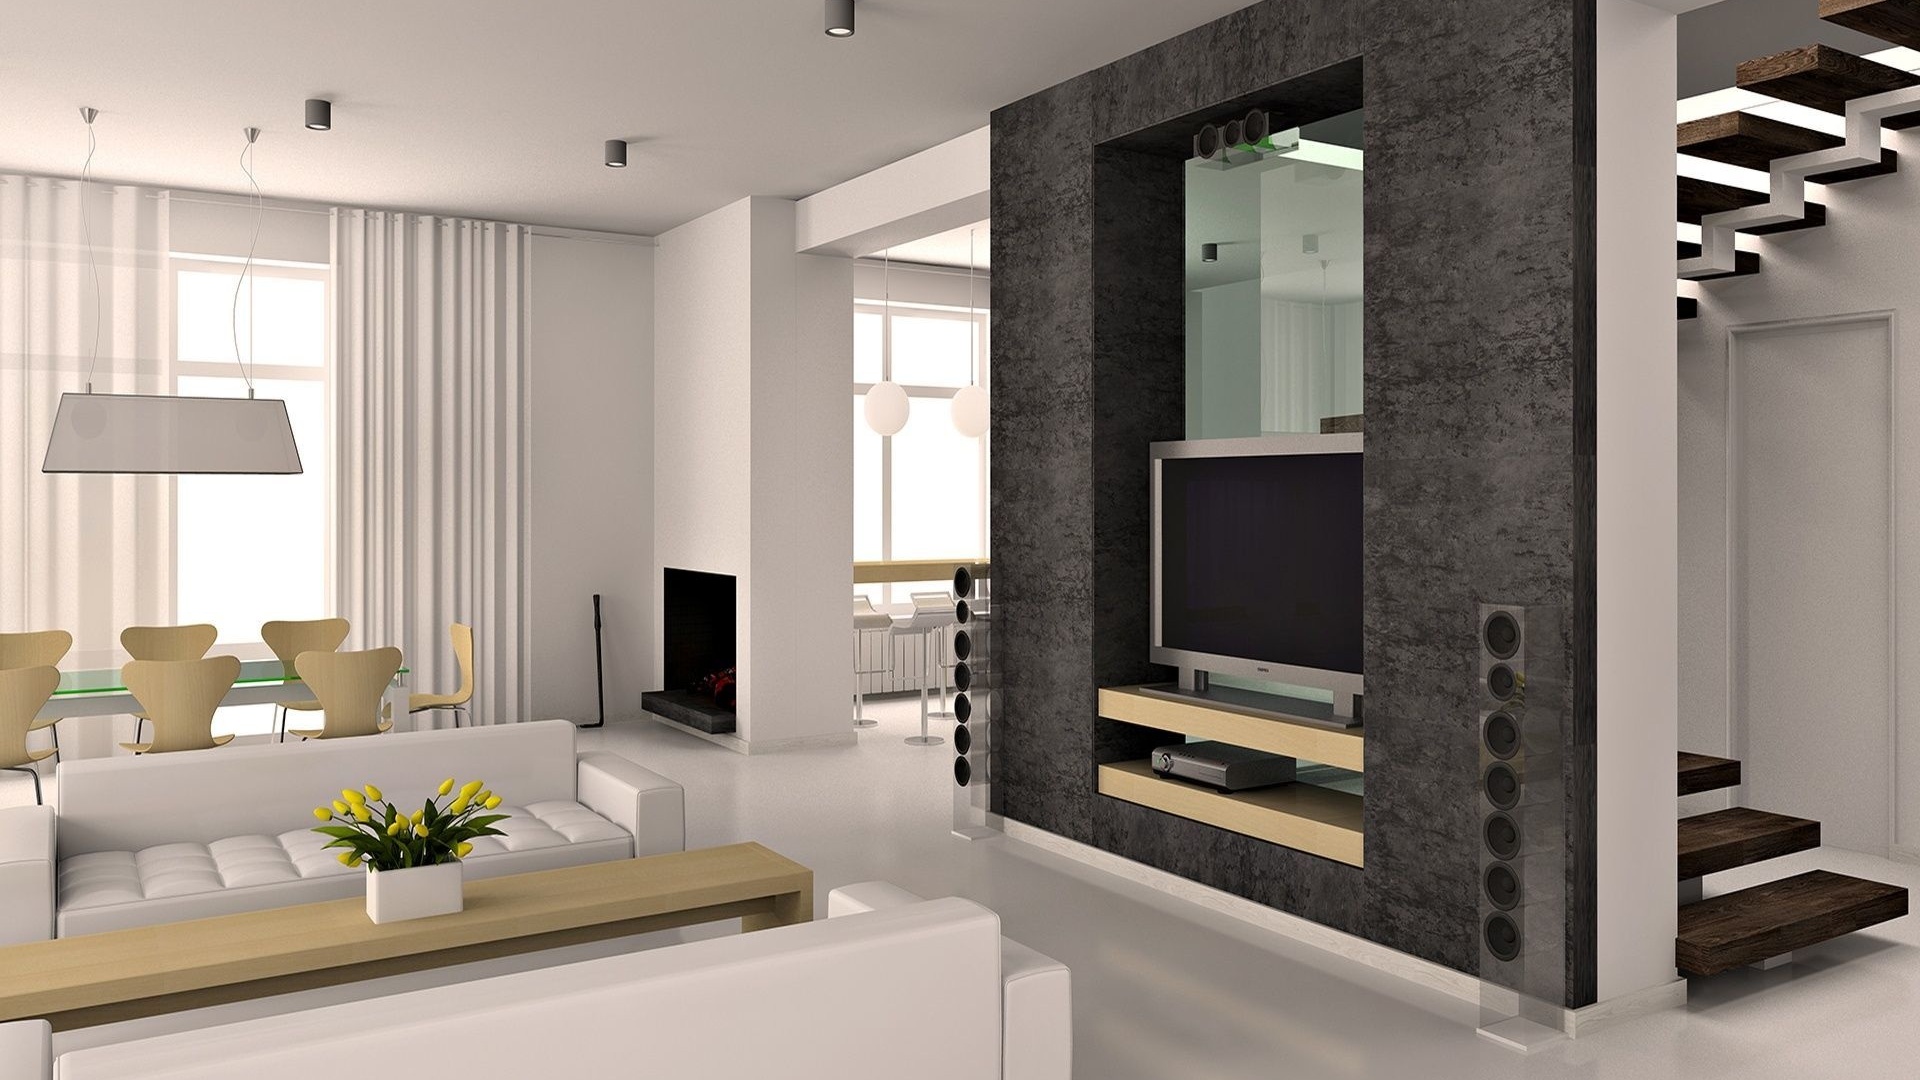 Minimalism style living room option